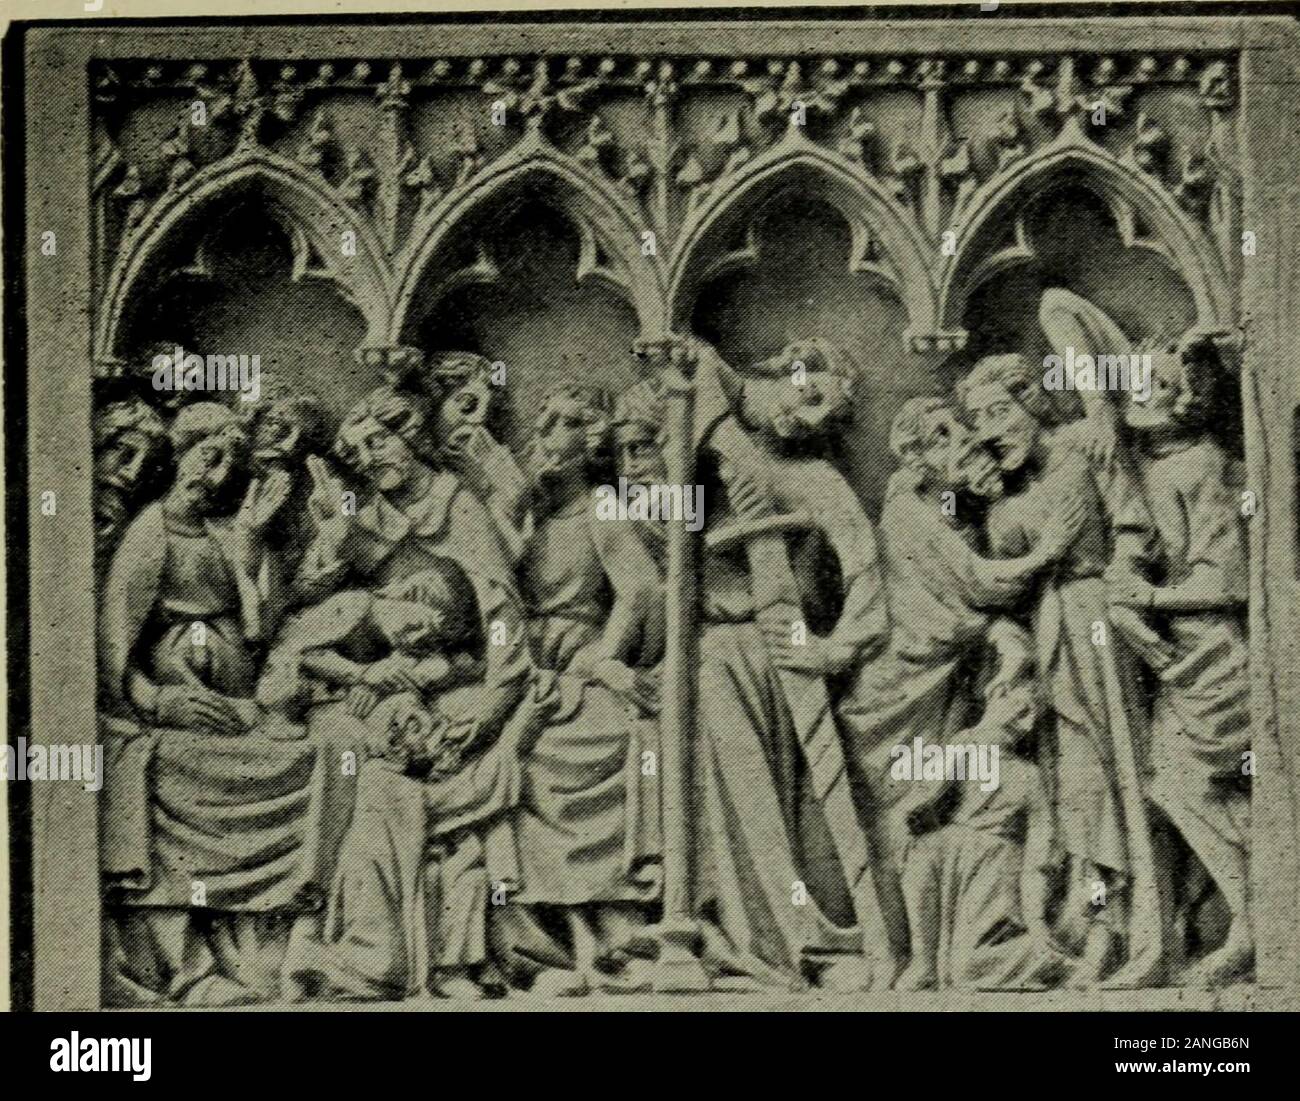 Los trabajadores de marfil de la edad media. urrounded por los apóstoles,  mientras que la pequeña nakedsoul está sobre el brazo de Cristo, que  suscita su handto bendice el cuerpo muerto. Toda